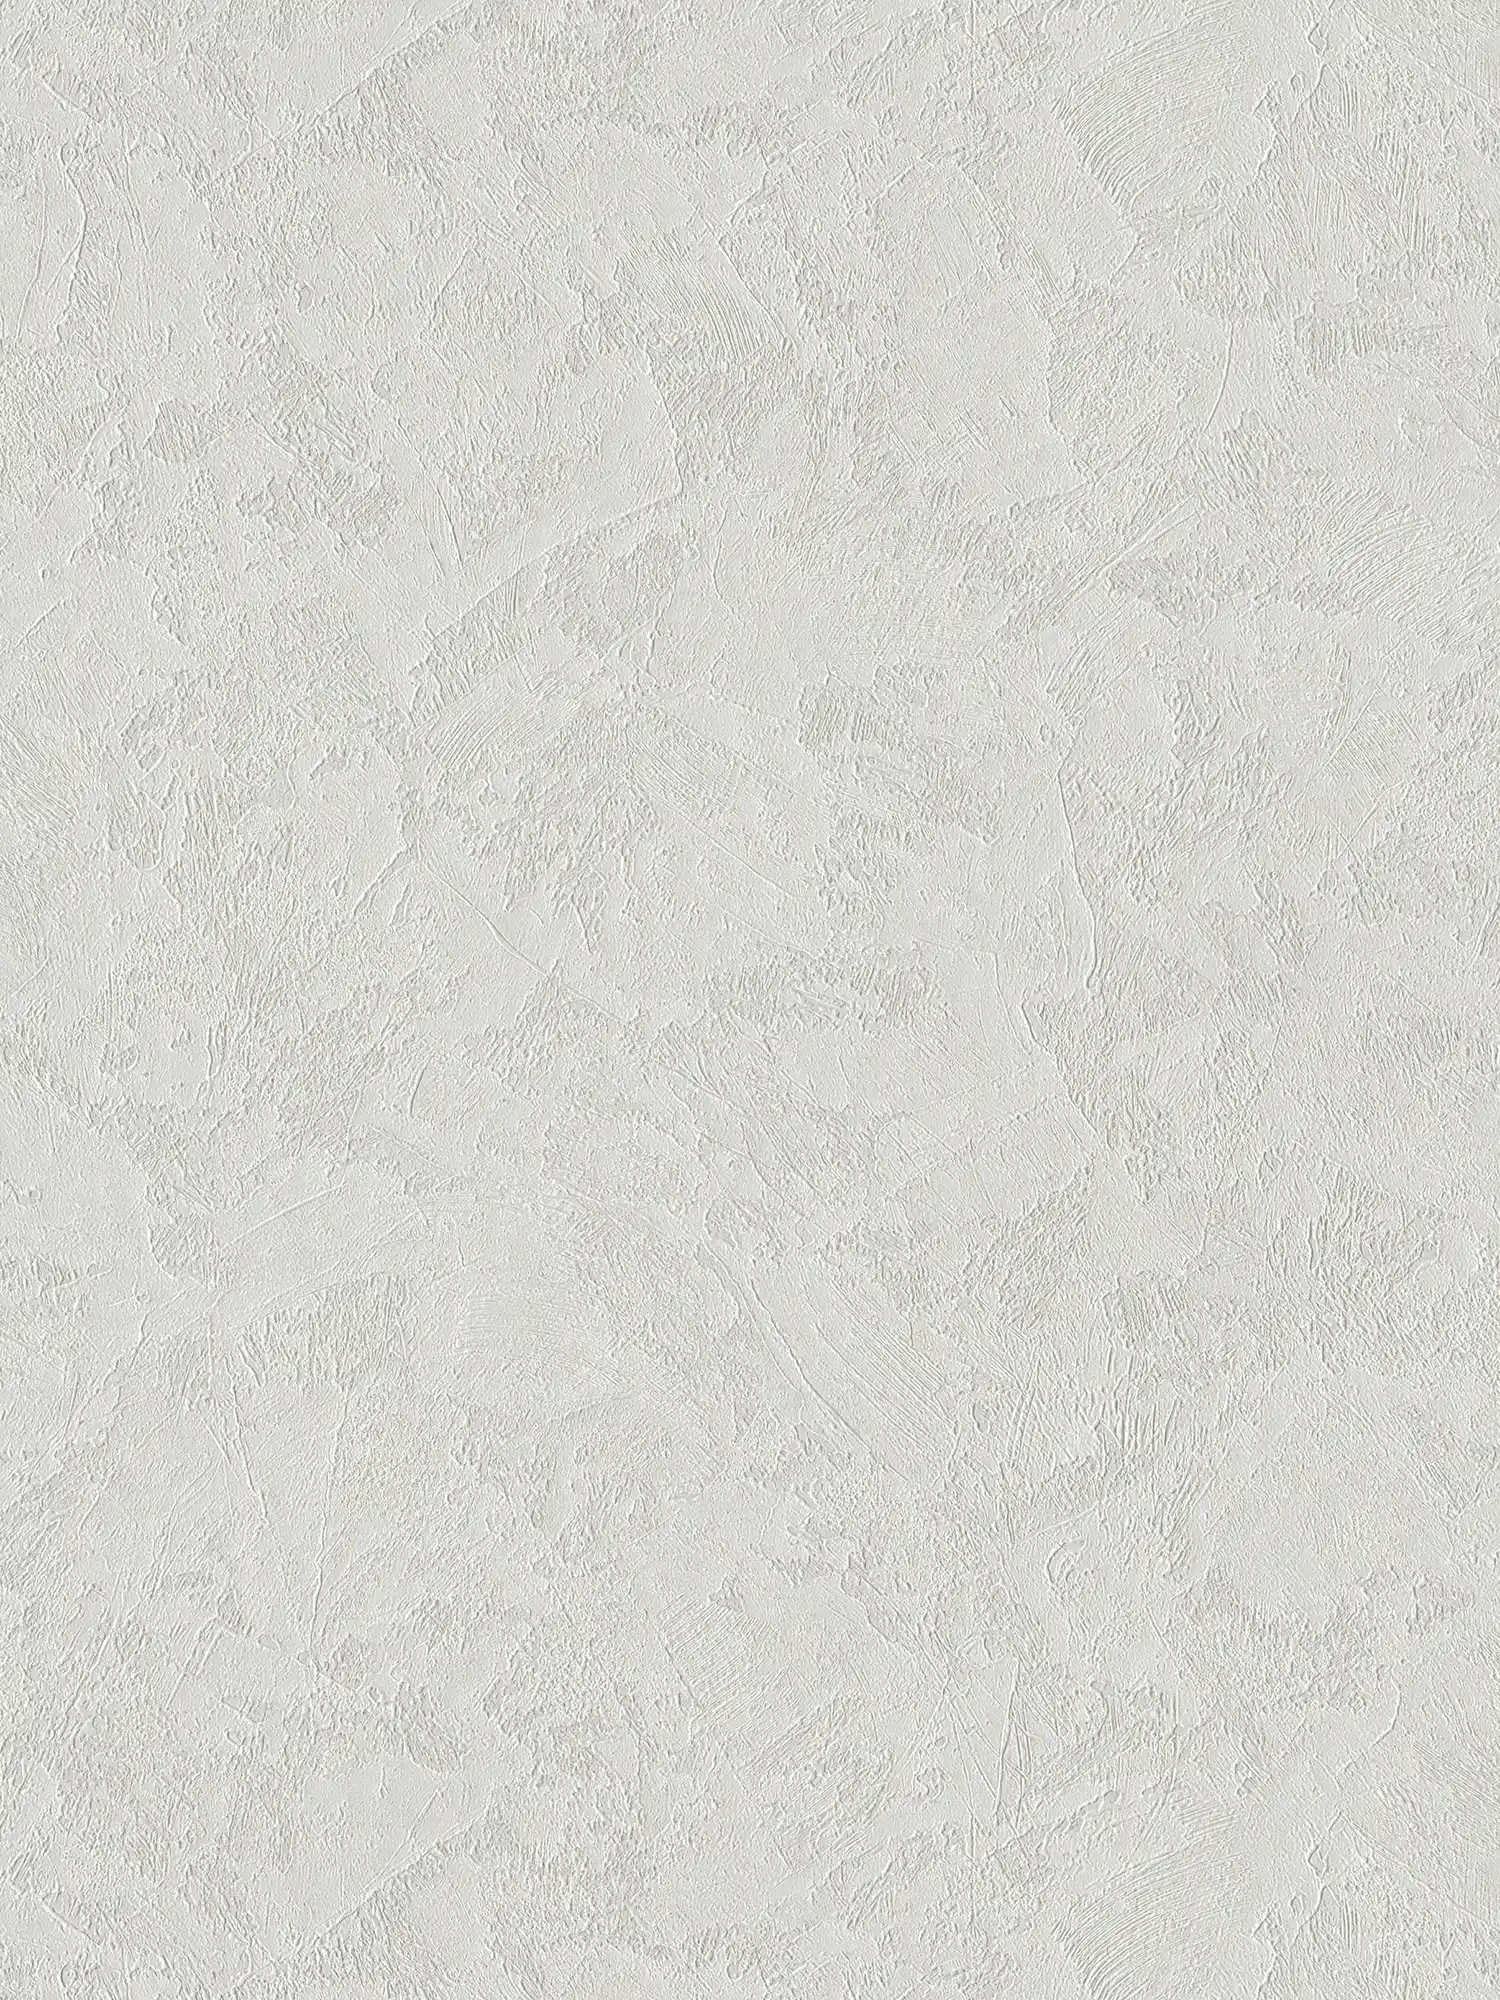 vinyle expansé uni aspect plâtre avec effet scintillant - gris
